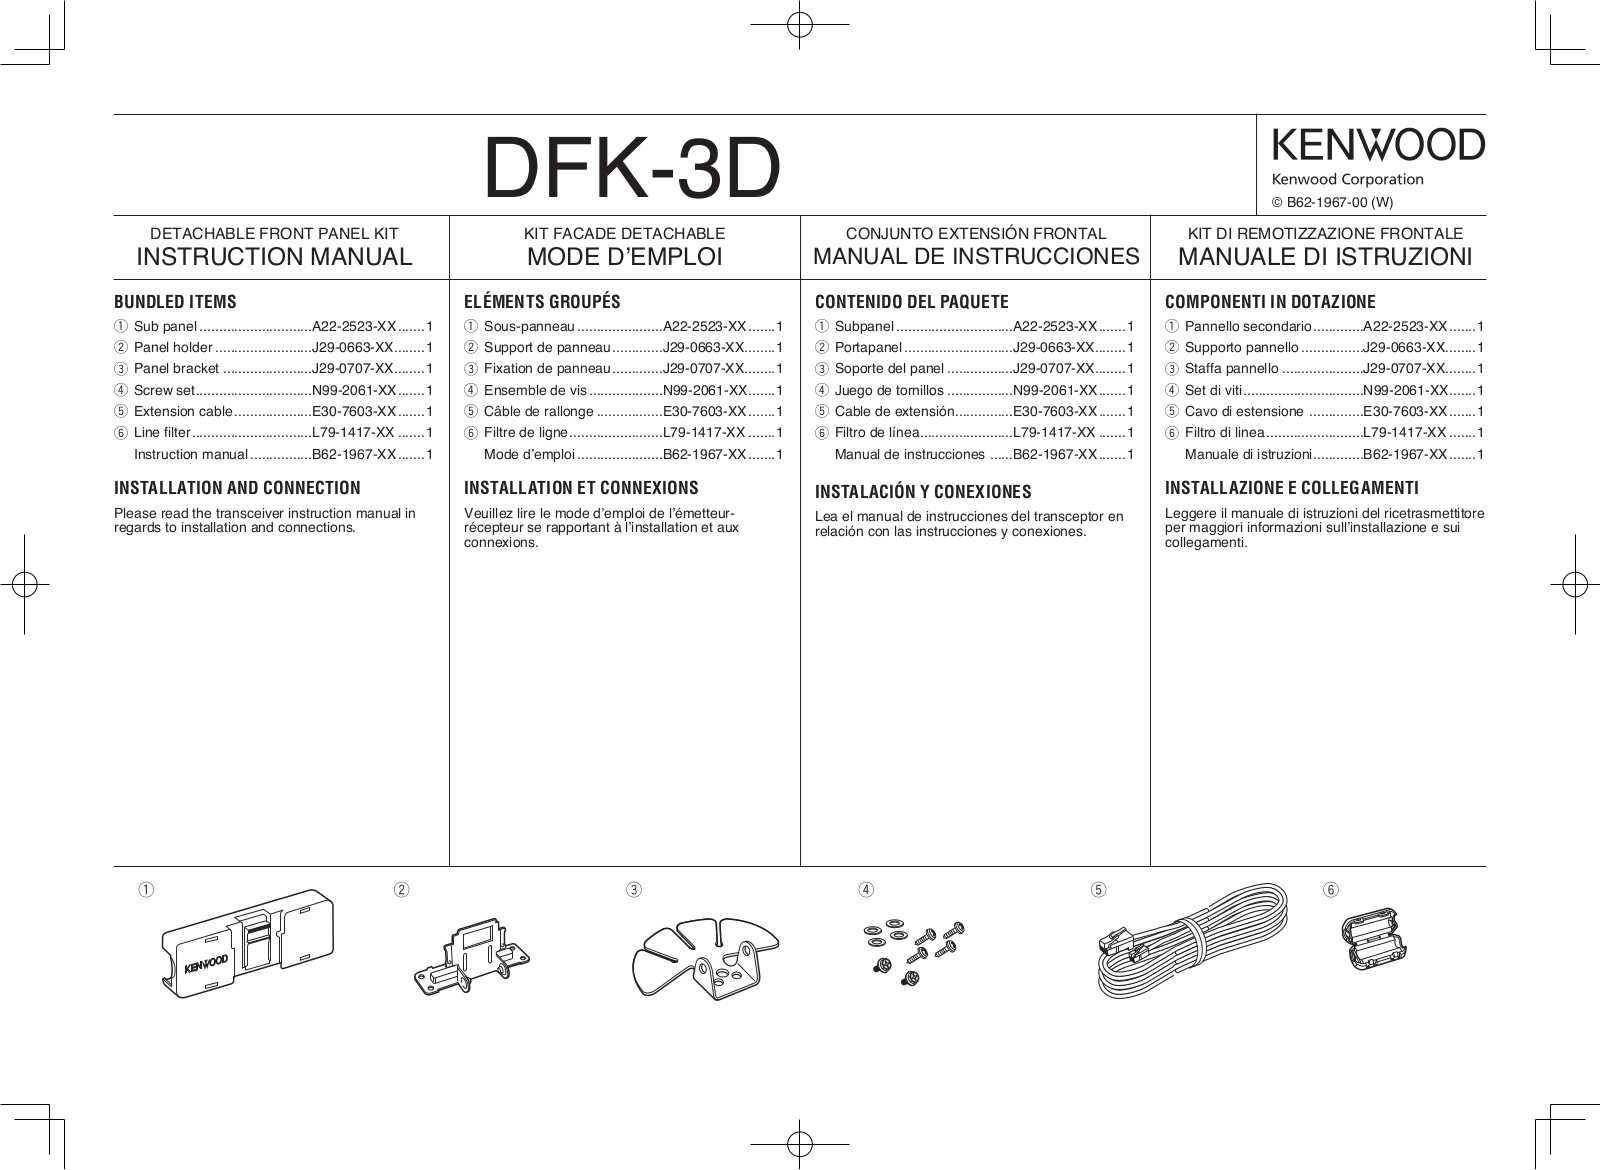 Kenwood DFK-3D User Manual